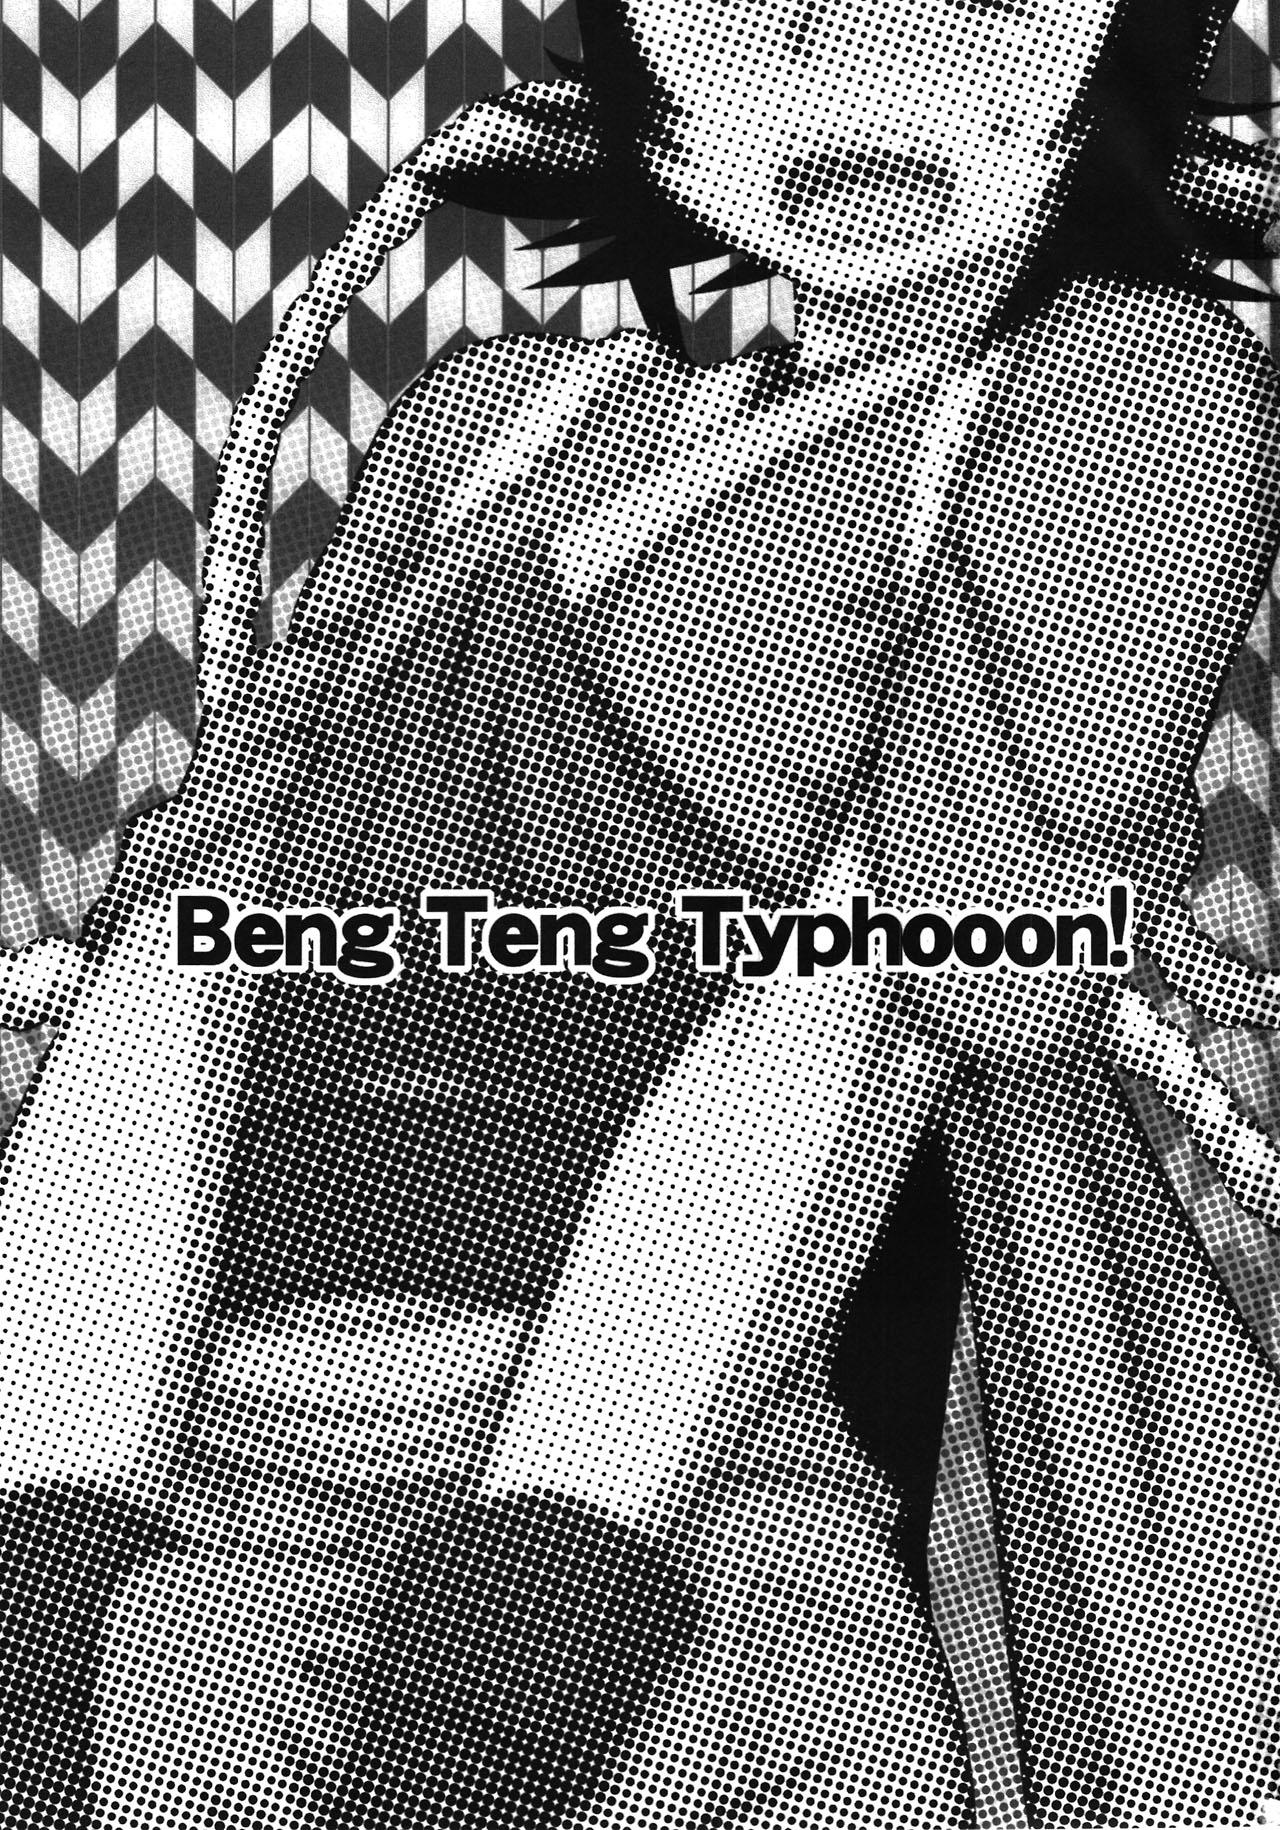 Sex Toys Beng Teng Typhooon! - Rurouni kenshin Speculum - Page 3